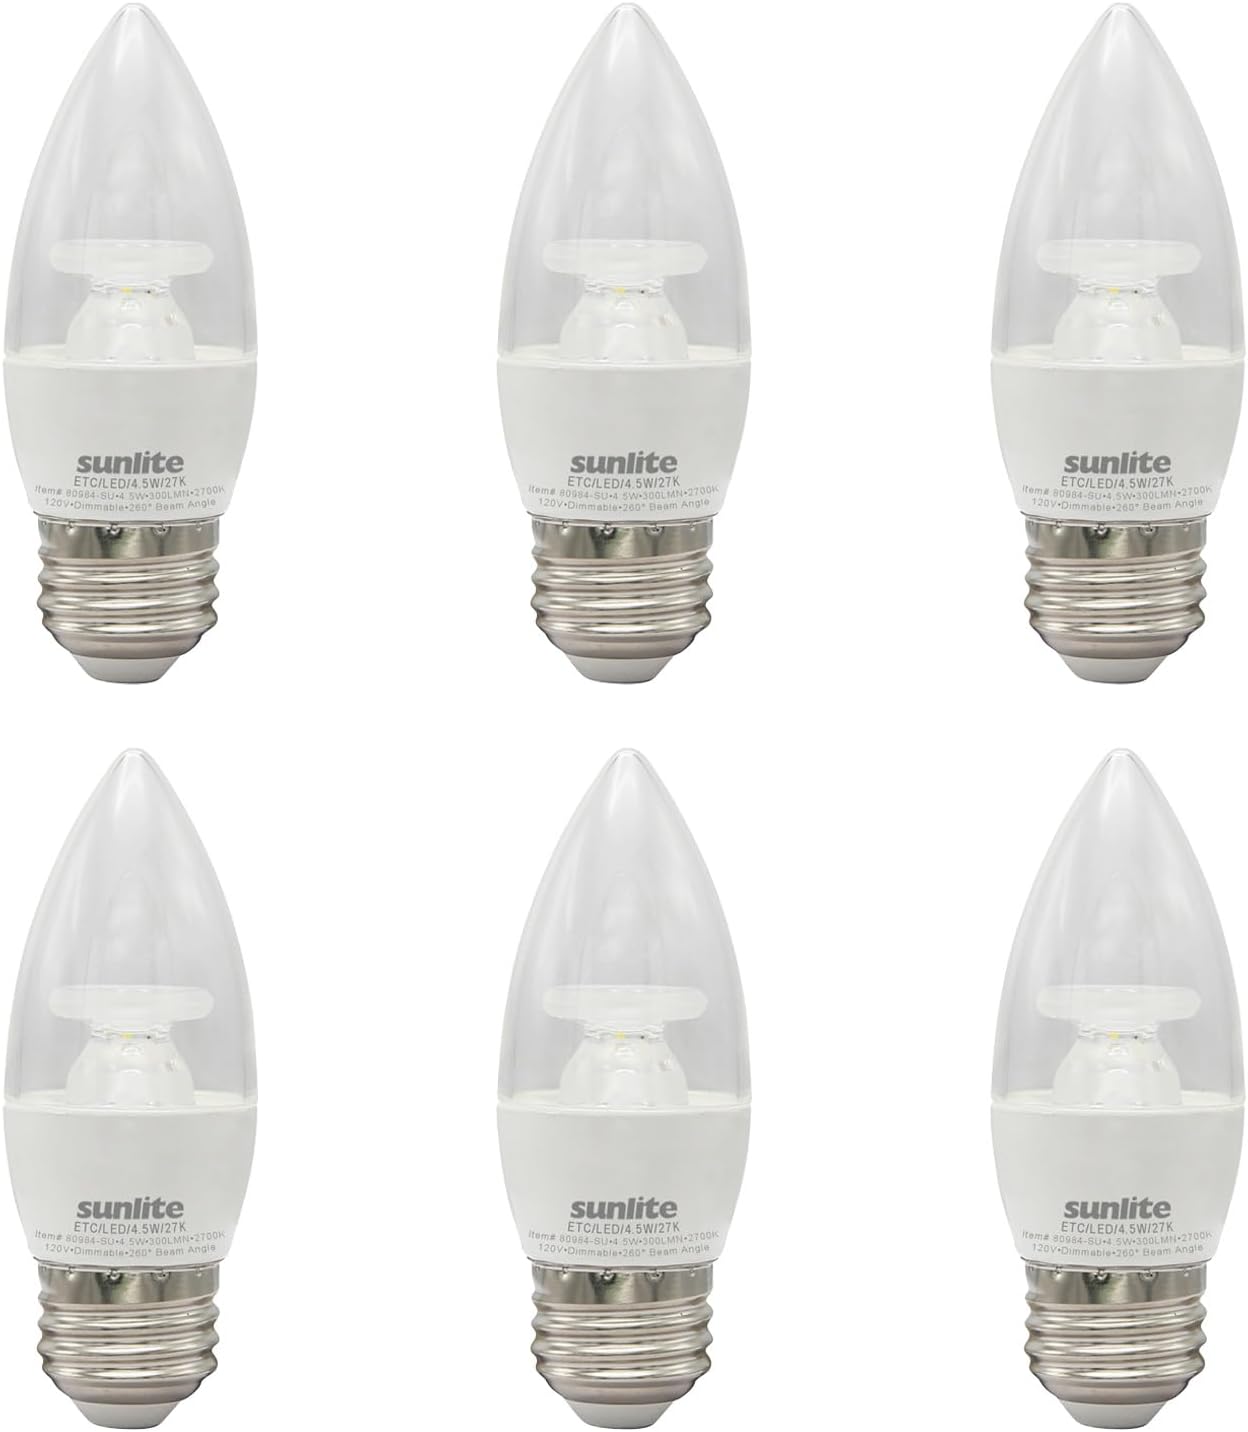 Sunlite LED B11 Clear Chandelier Light Bulb, 4.5 Watts (40W=), 300 Lumens, 120 Volts, Dimmable, Medium E26 Base, Energy Star, 90 CRI, ETL Listed, Torpedo Tip, 2700K Warm White, 6 Pack